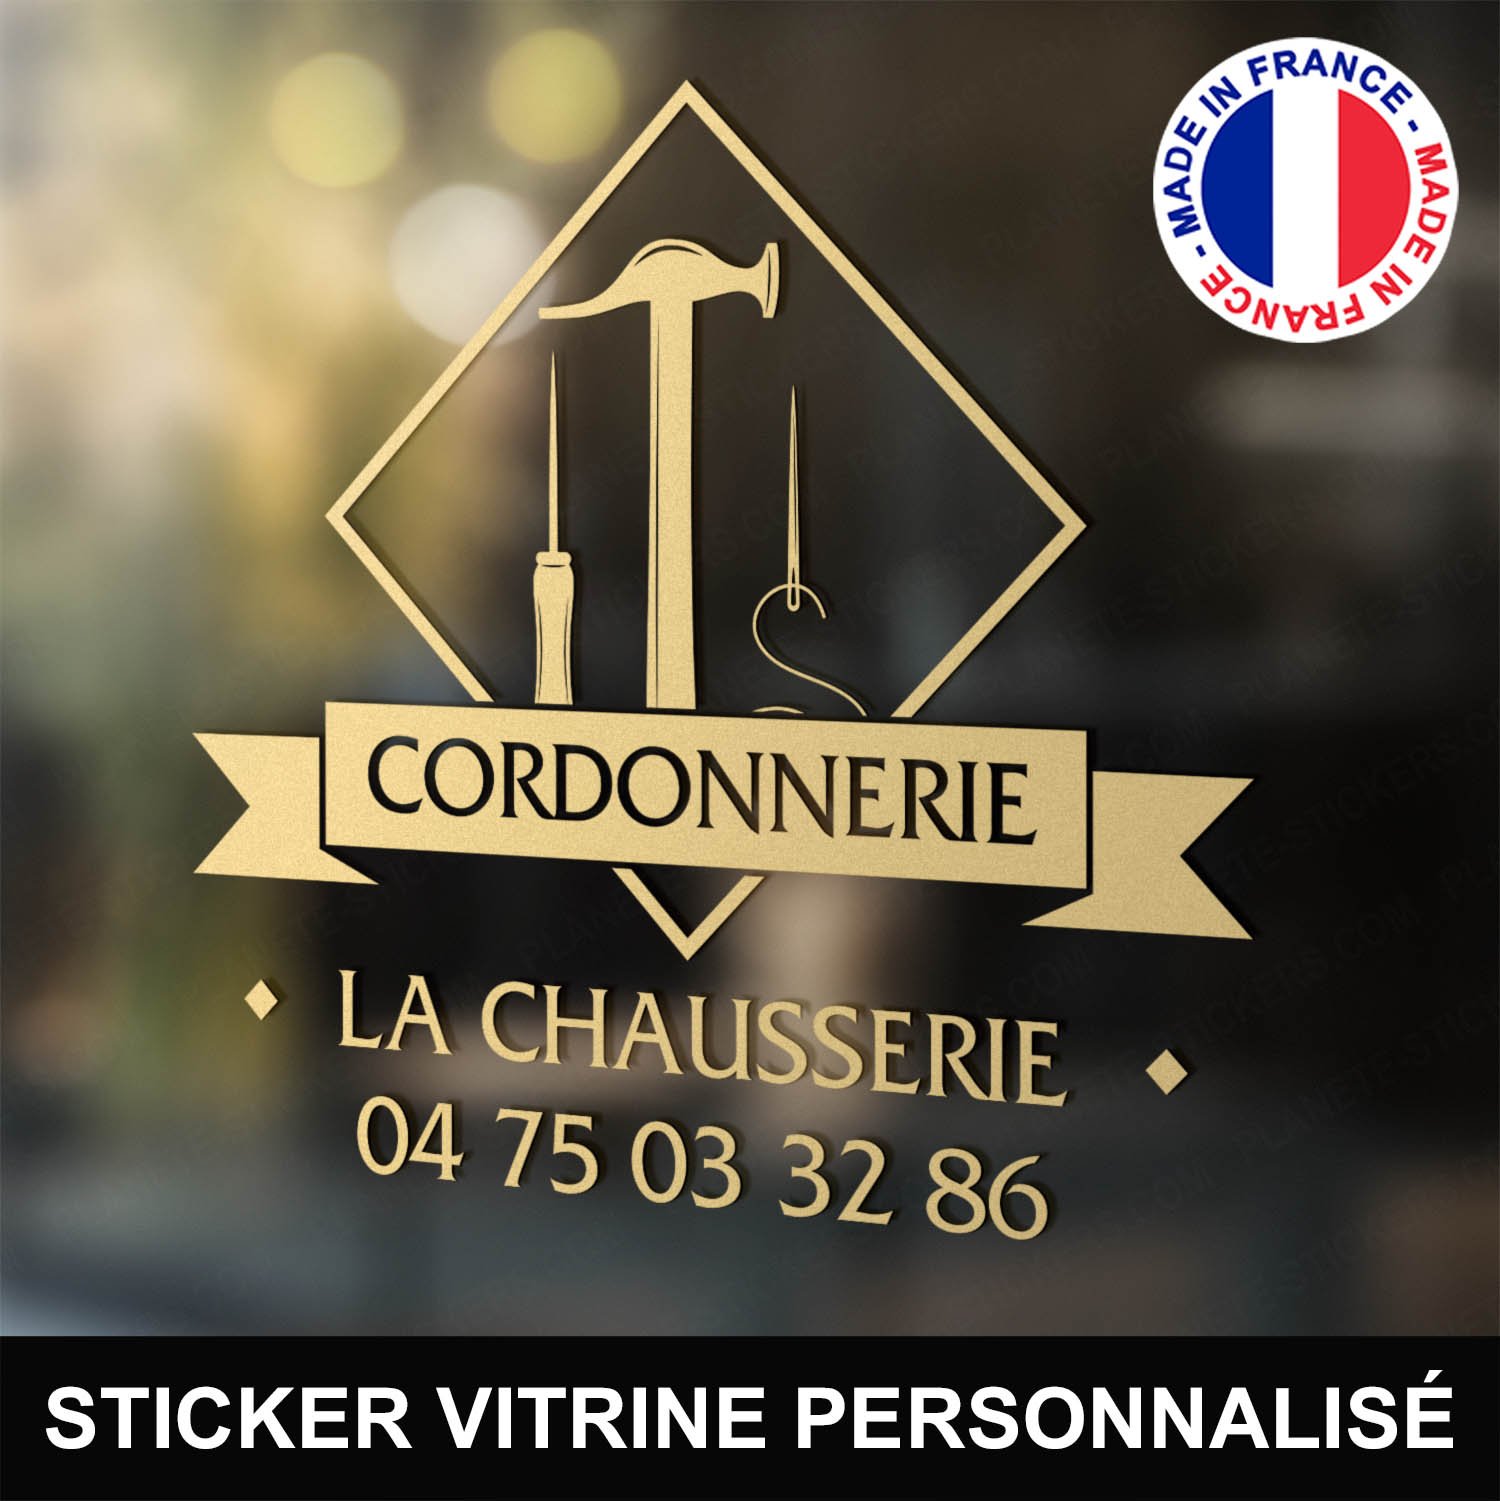 ref4cordonniervitrine-stickers-cordonnerie-vitrine-sticker-personnalisé-autocollant-atelier-chaussure-marteau-reparation-pro-professionnel